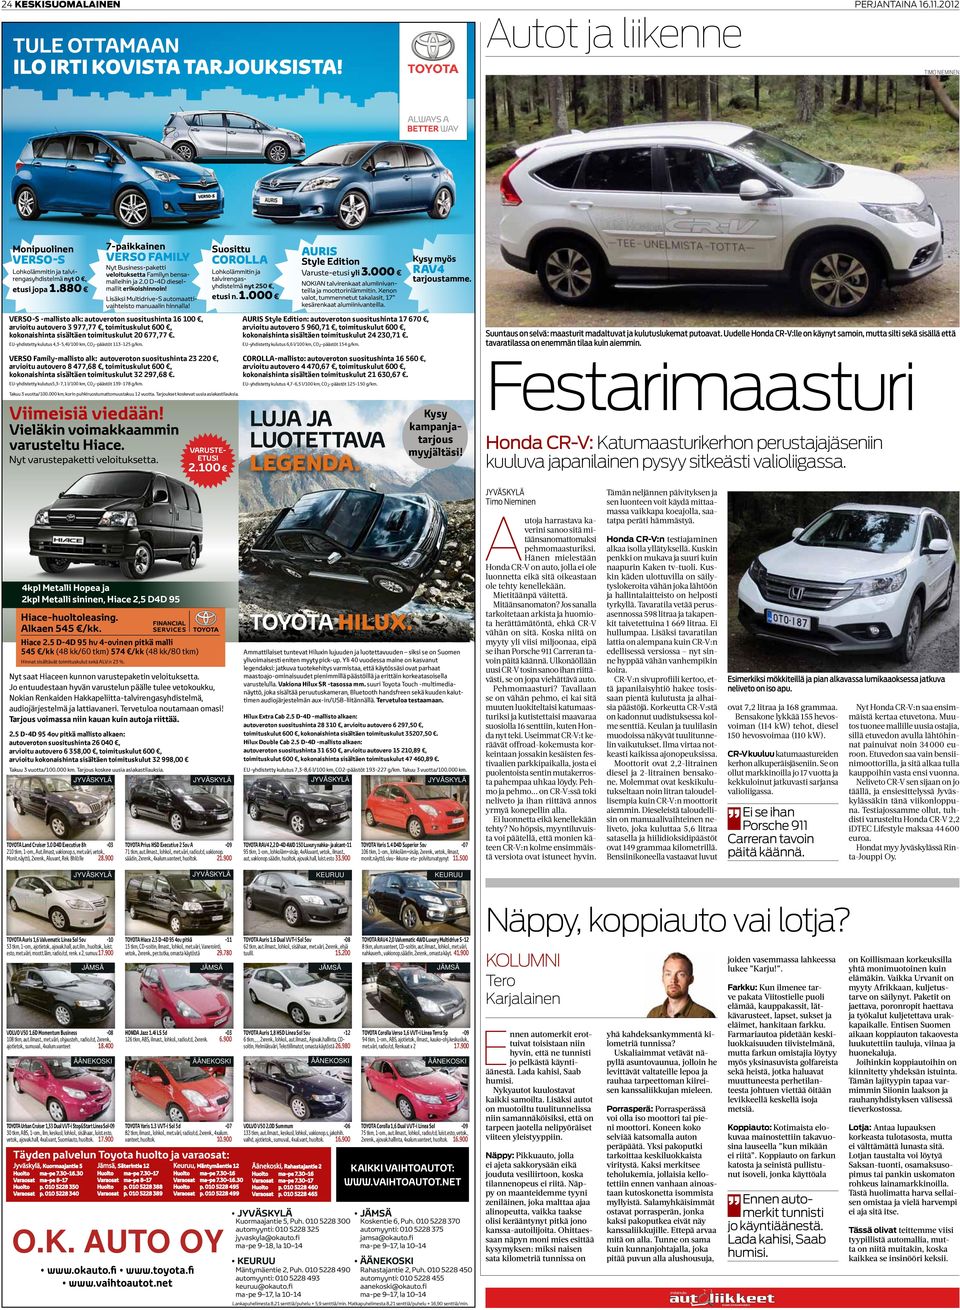 Timo Nieminen auris Kysy myös Style Edition rav4 Varuste-etusi yli 3.000 tarjoustamme. NOKIAN talvirenkaat alumiinivanteilla ja moottorinlämmitin.